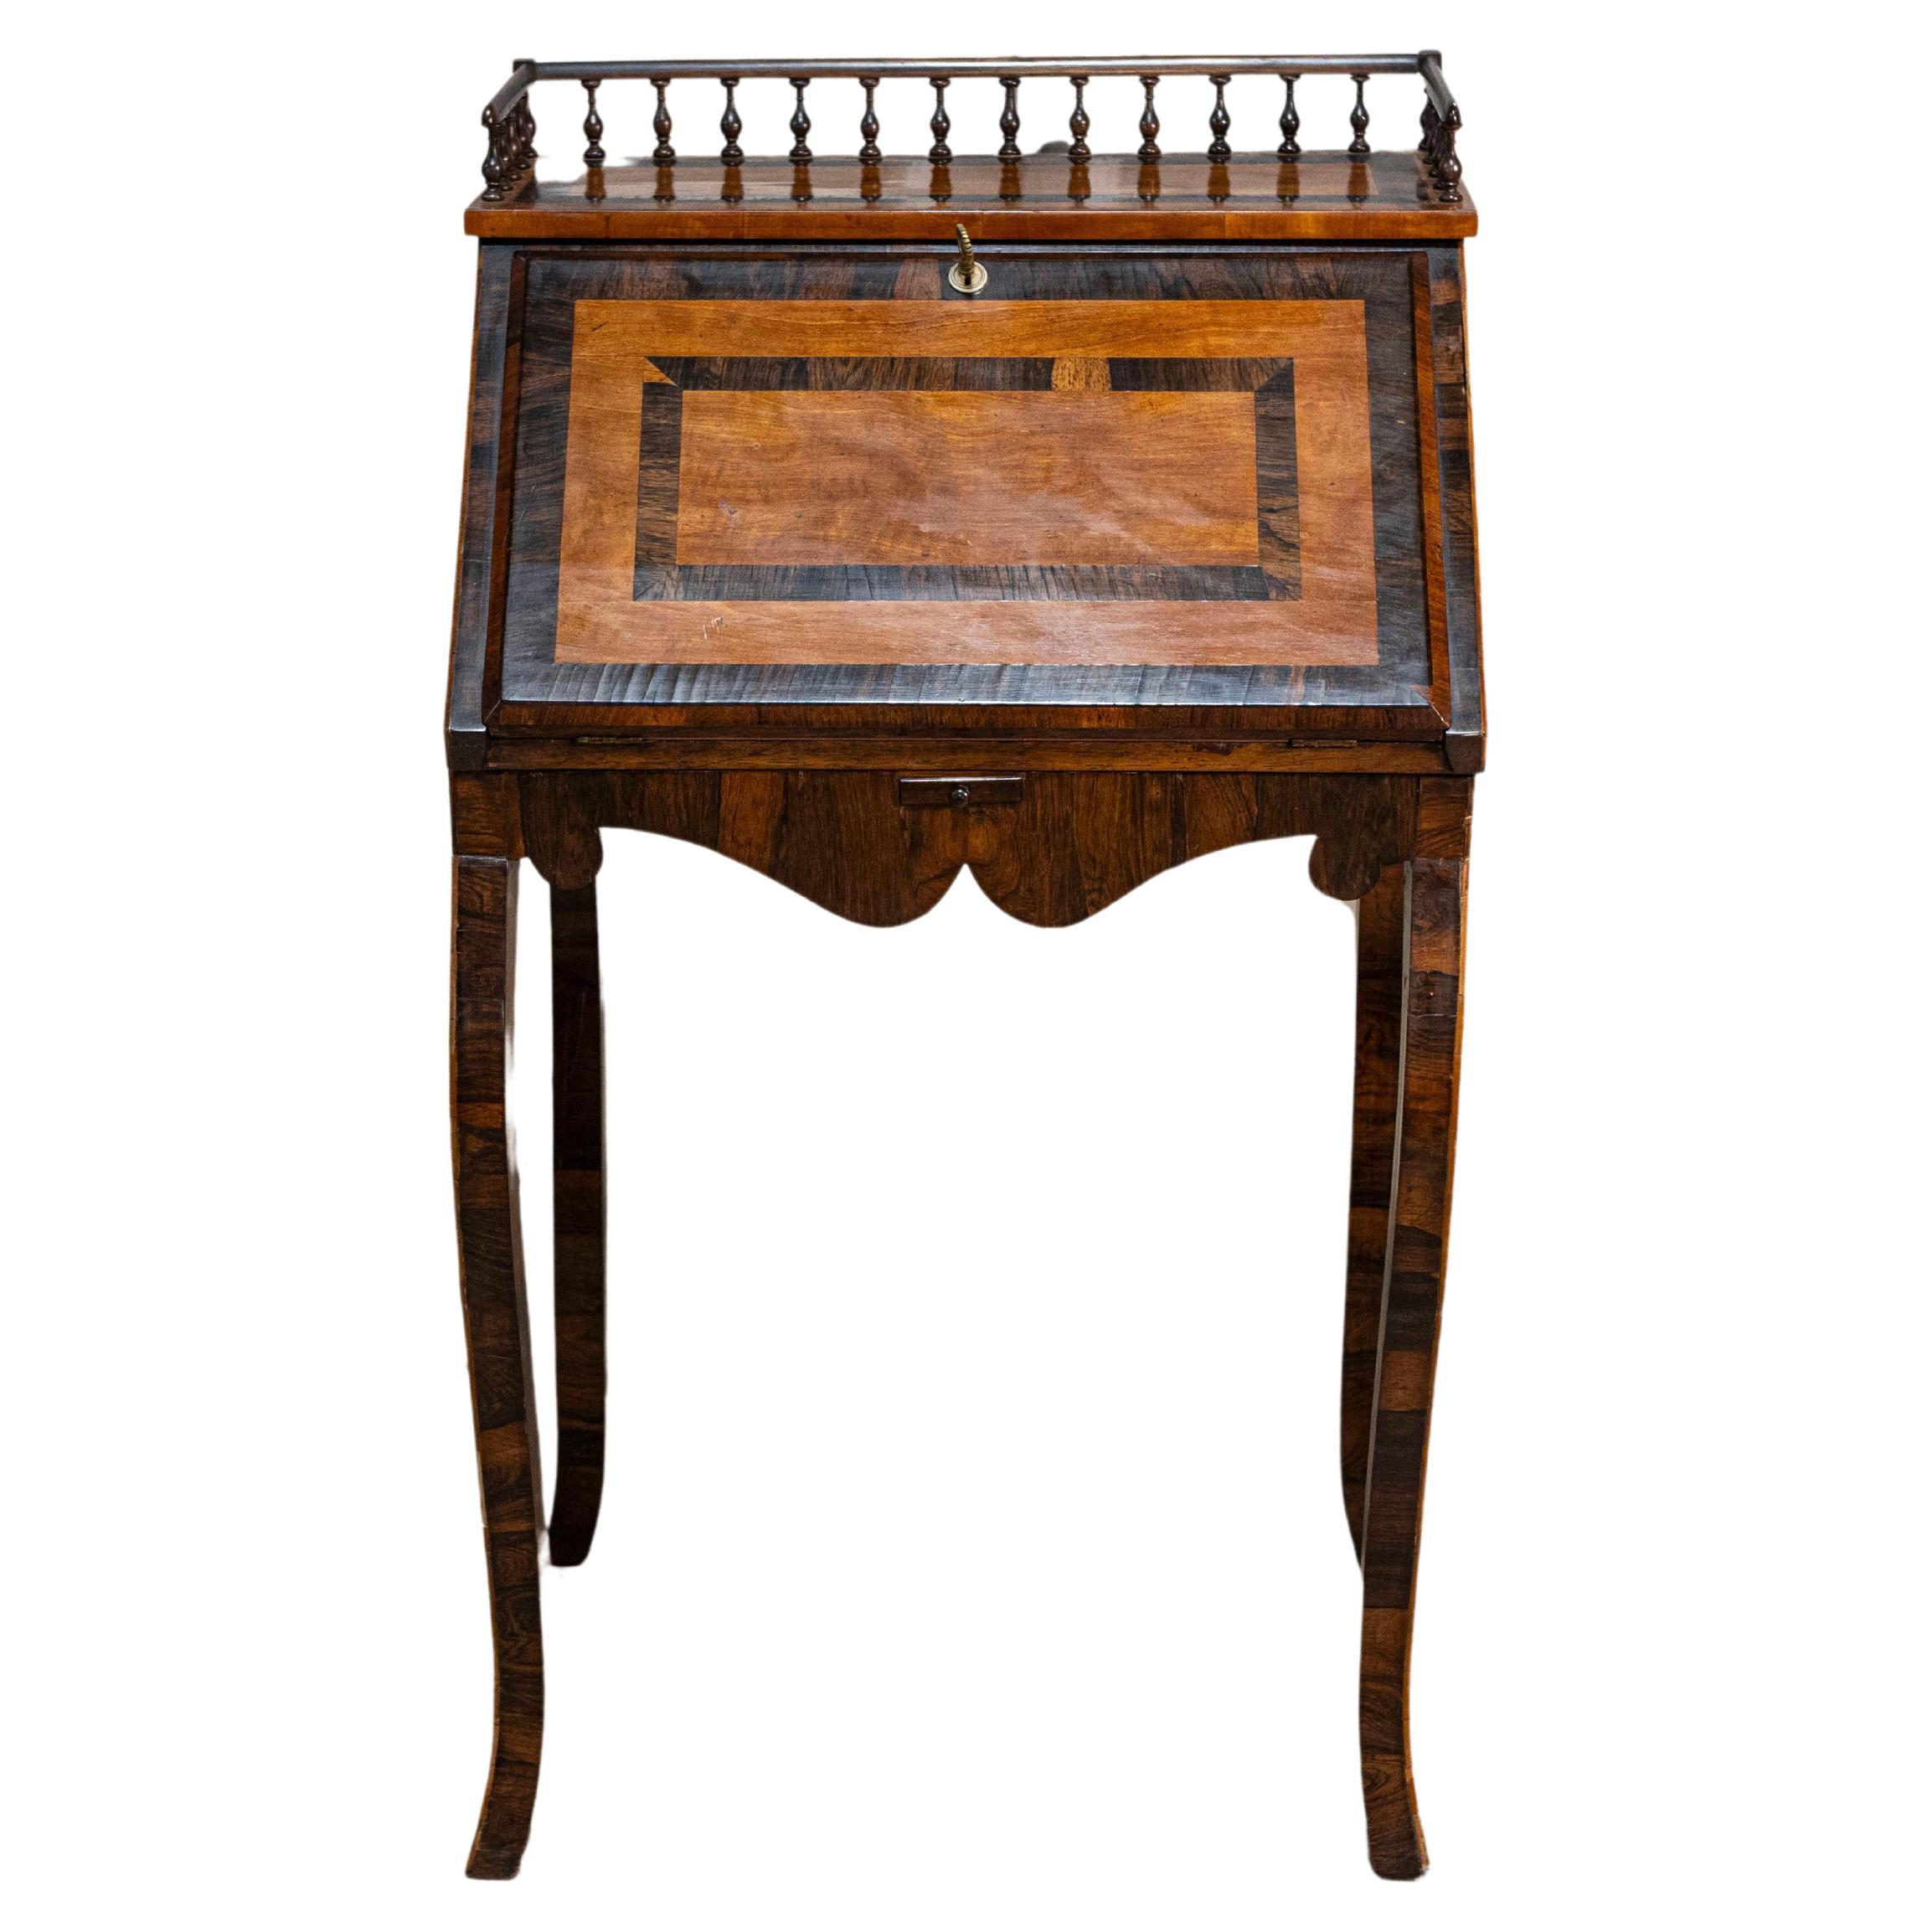 Italian 19th Century Walnut and Mahogany Writing Table with Slant Front Desk